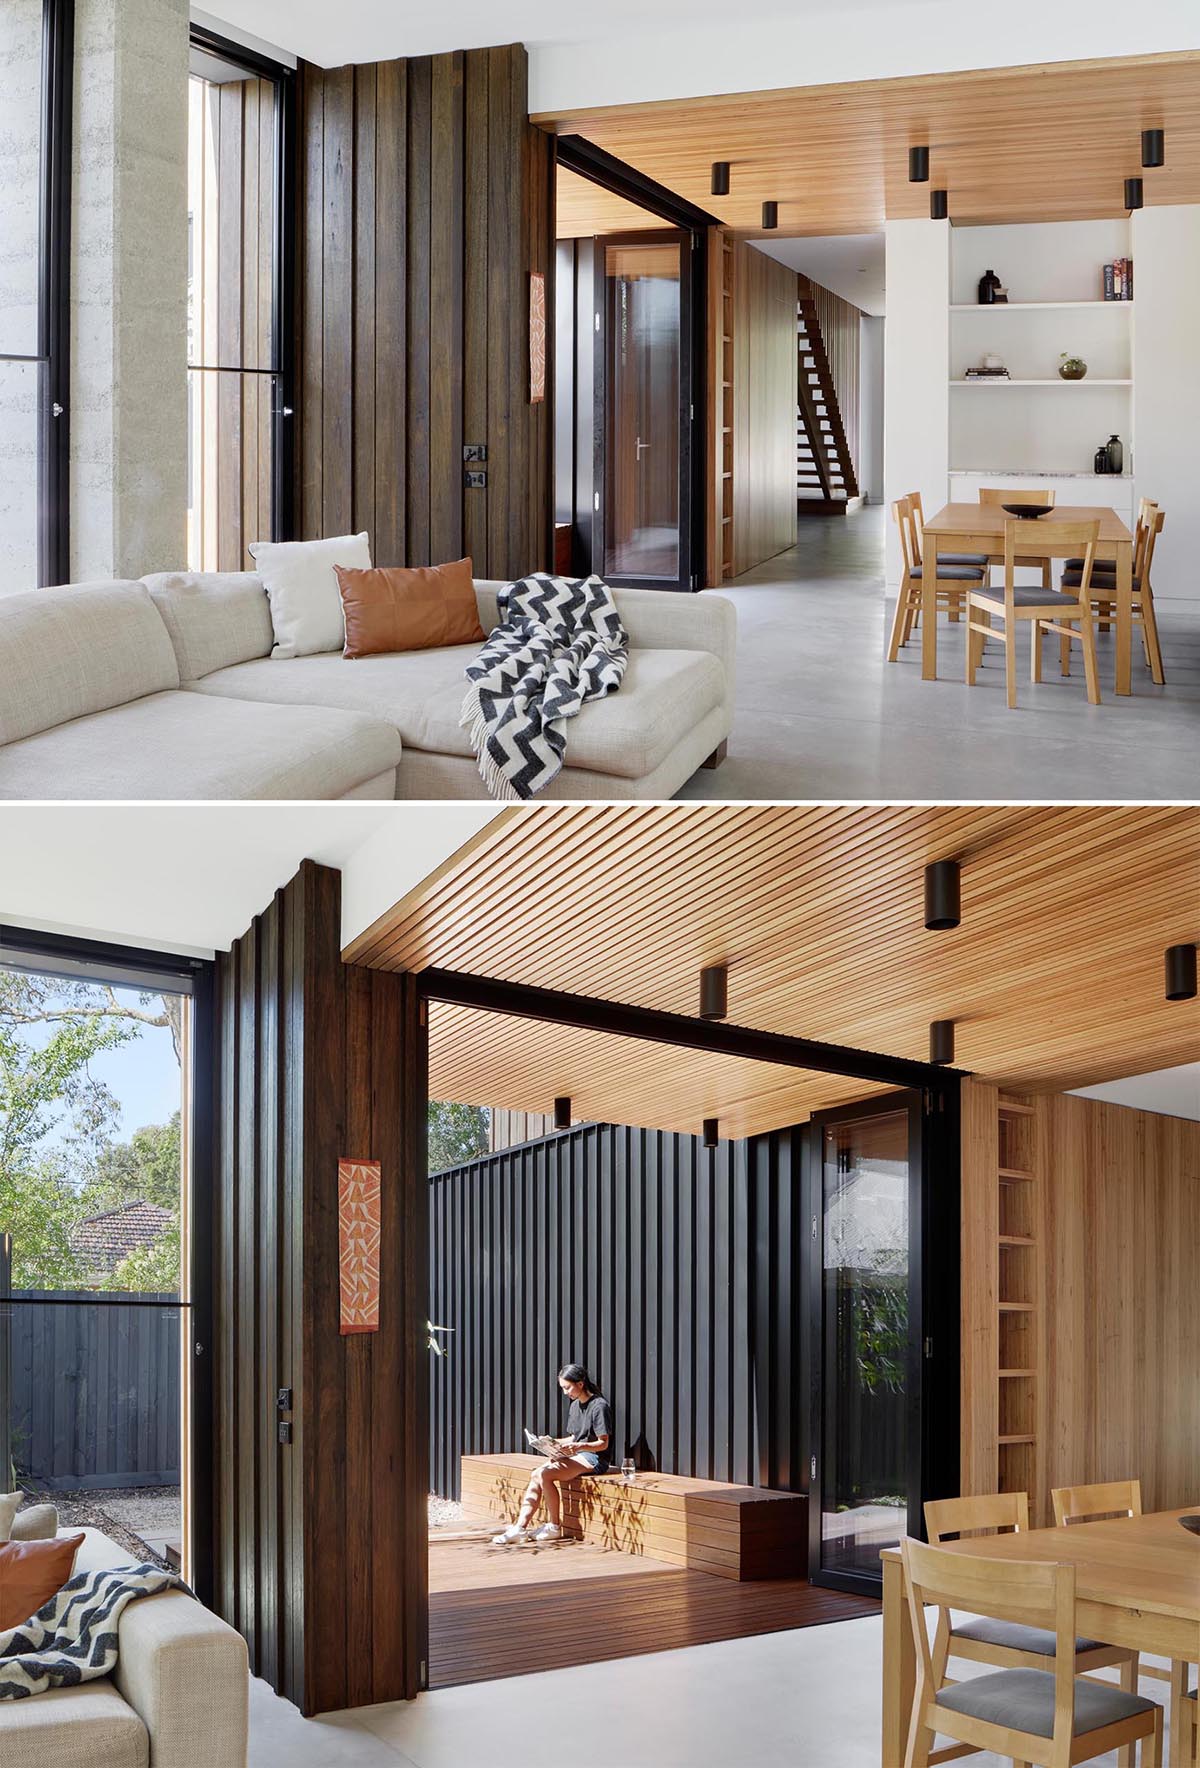 Деревянный потолок обозначает столовую и простирается до террасы со скамейкой, с двустворчатыми дверями, соединяющими два пространства.